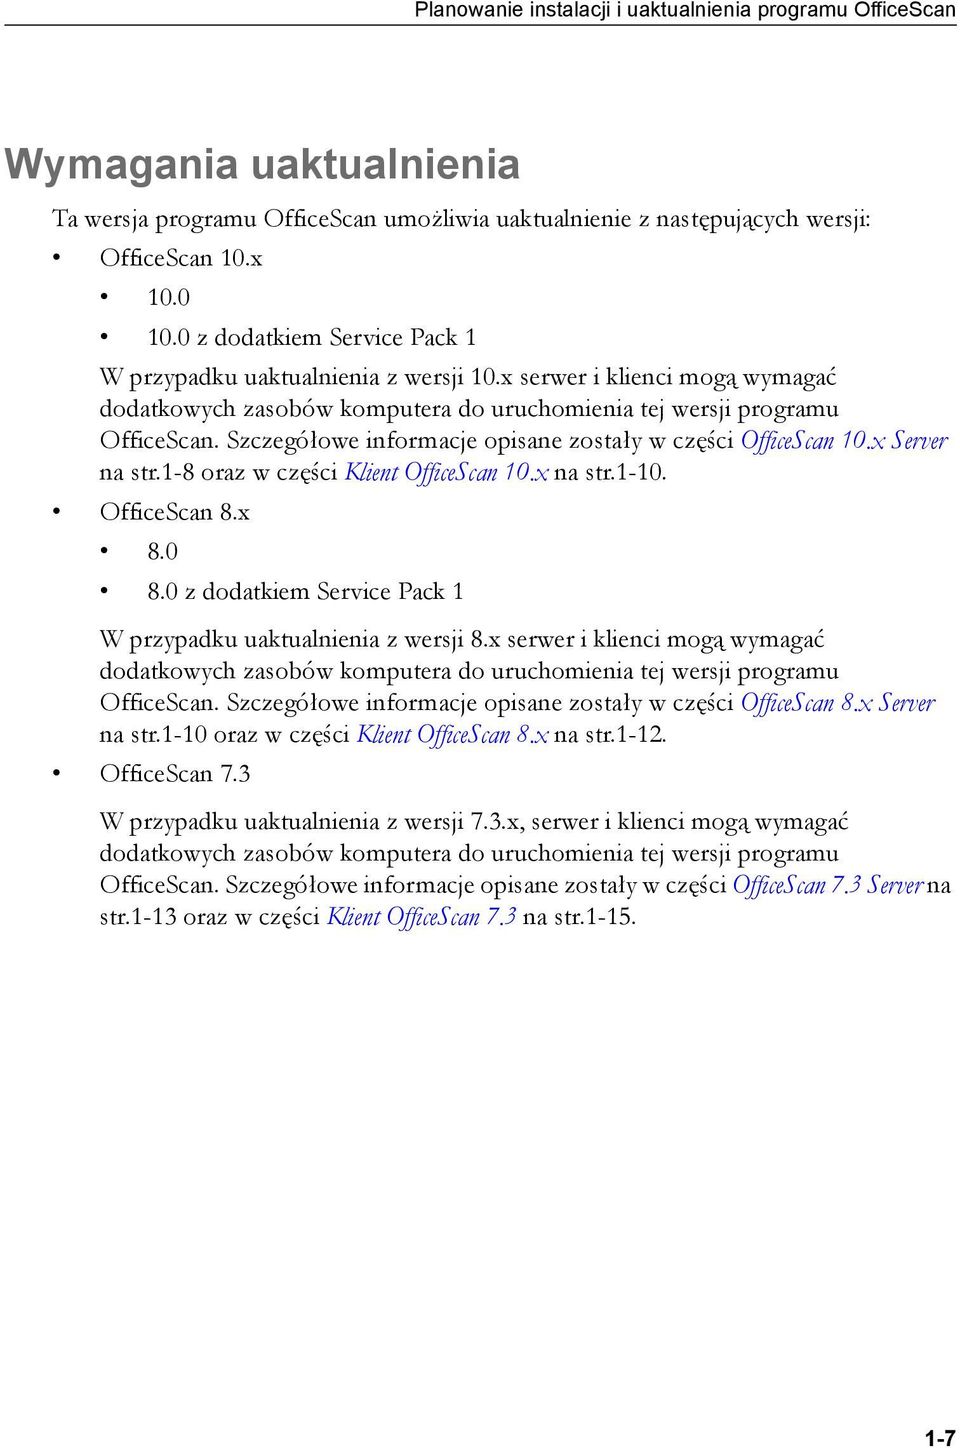 Szczegółowe informacje opisane zostały w części OfficeScan 10.x Server na str.1-8 oraz w części Klient OfficeScan 10.x na str.1-10. OfficeScan 8.x 8.0 8.